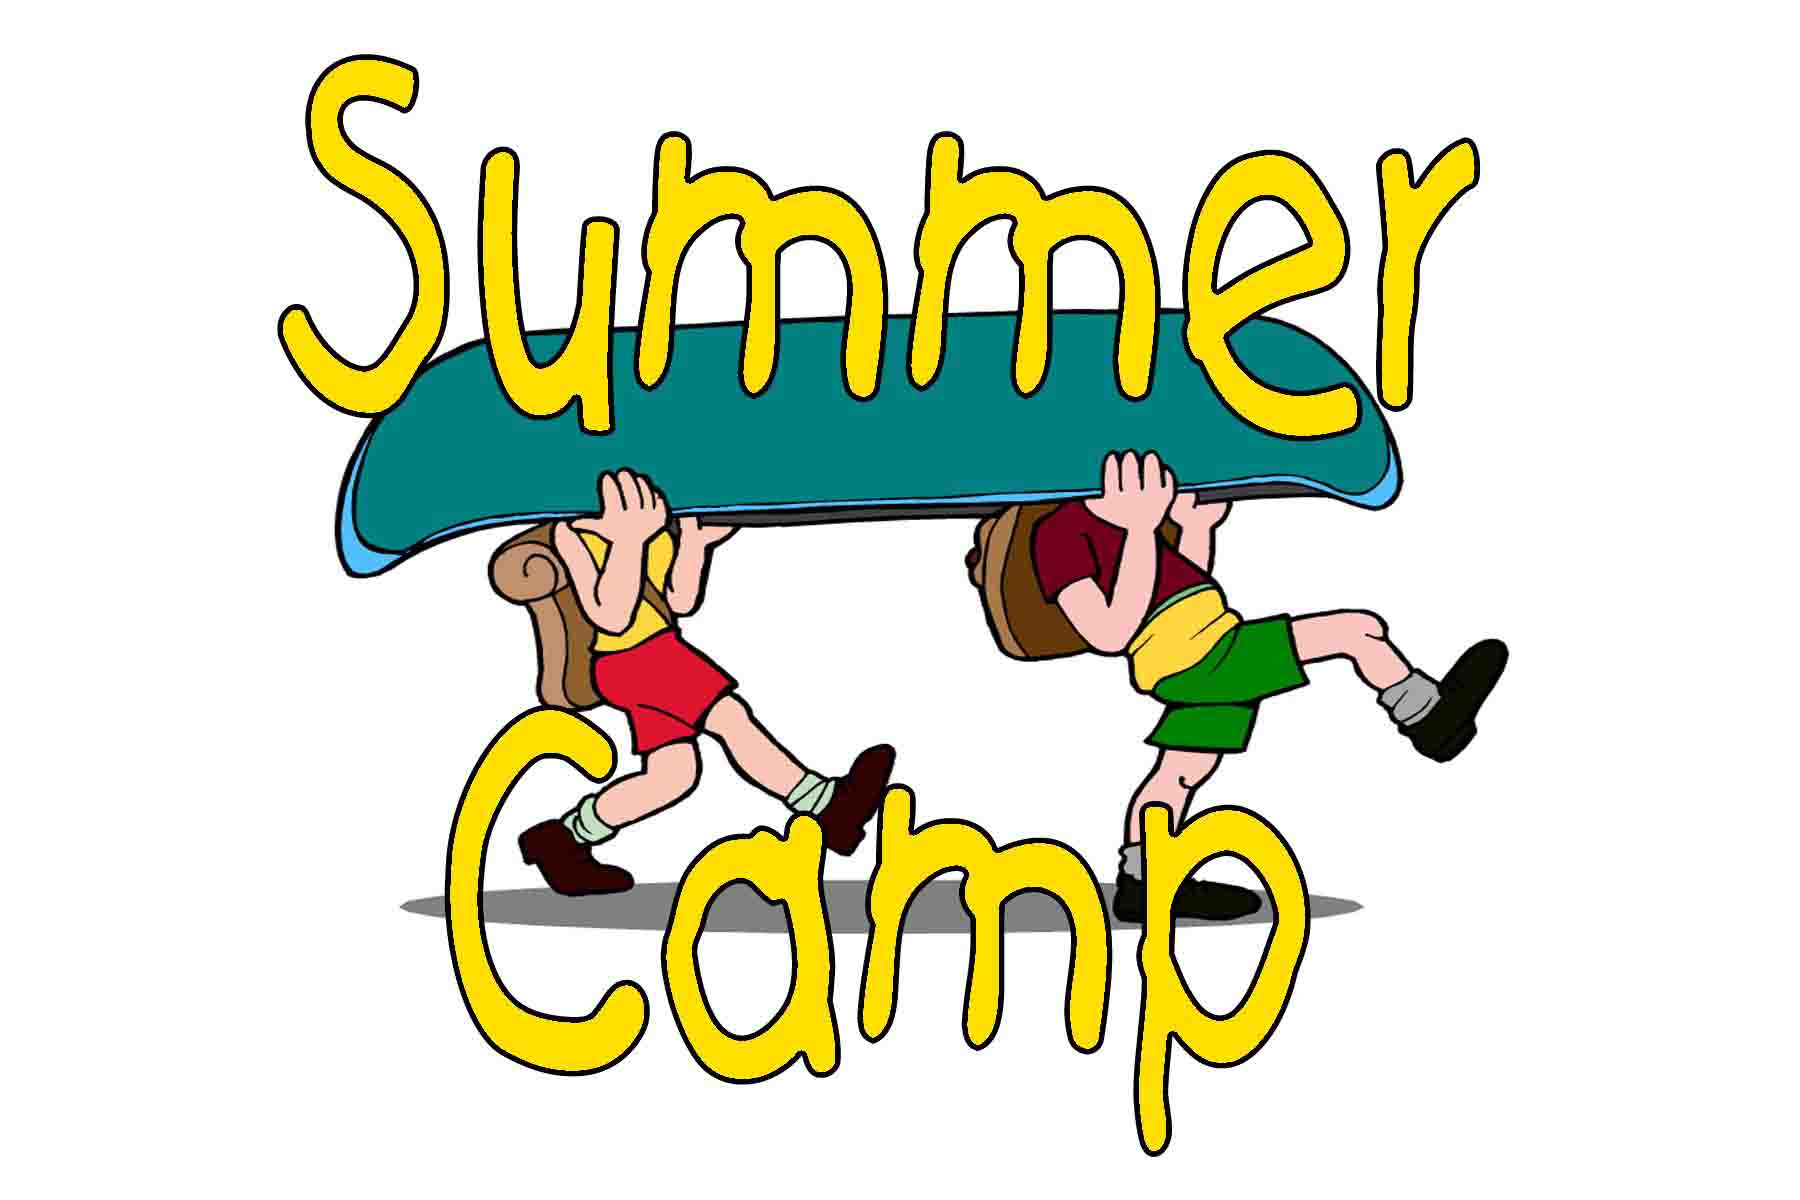 Summer Camp Clip Art - 79 cliparts